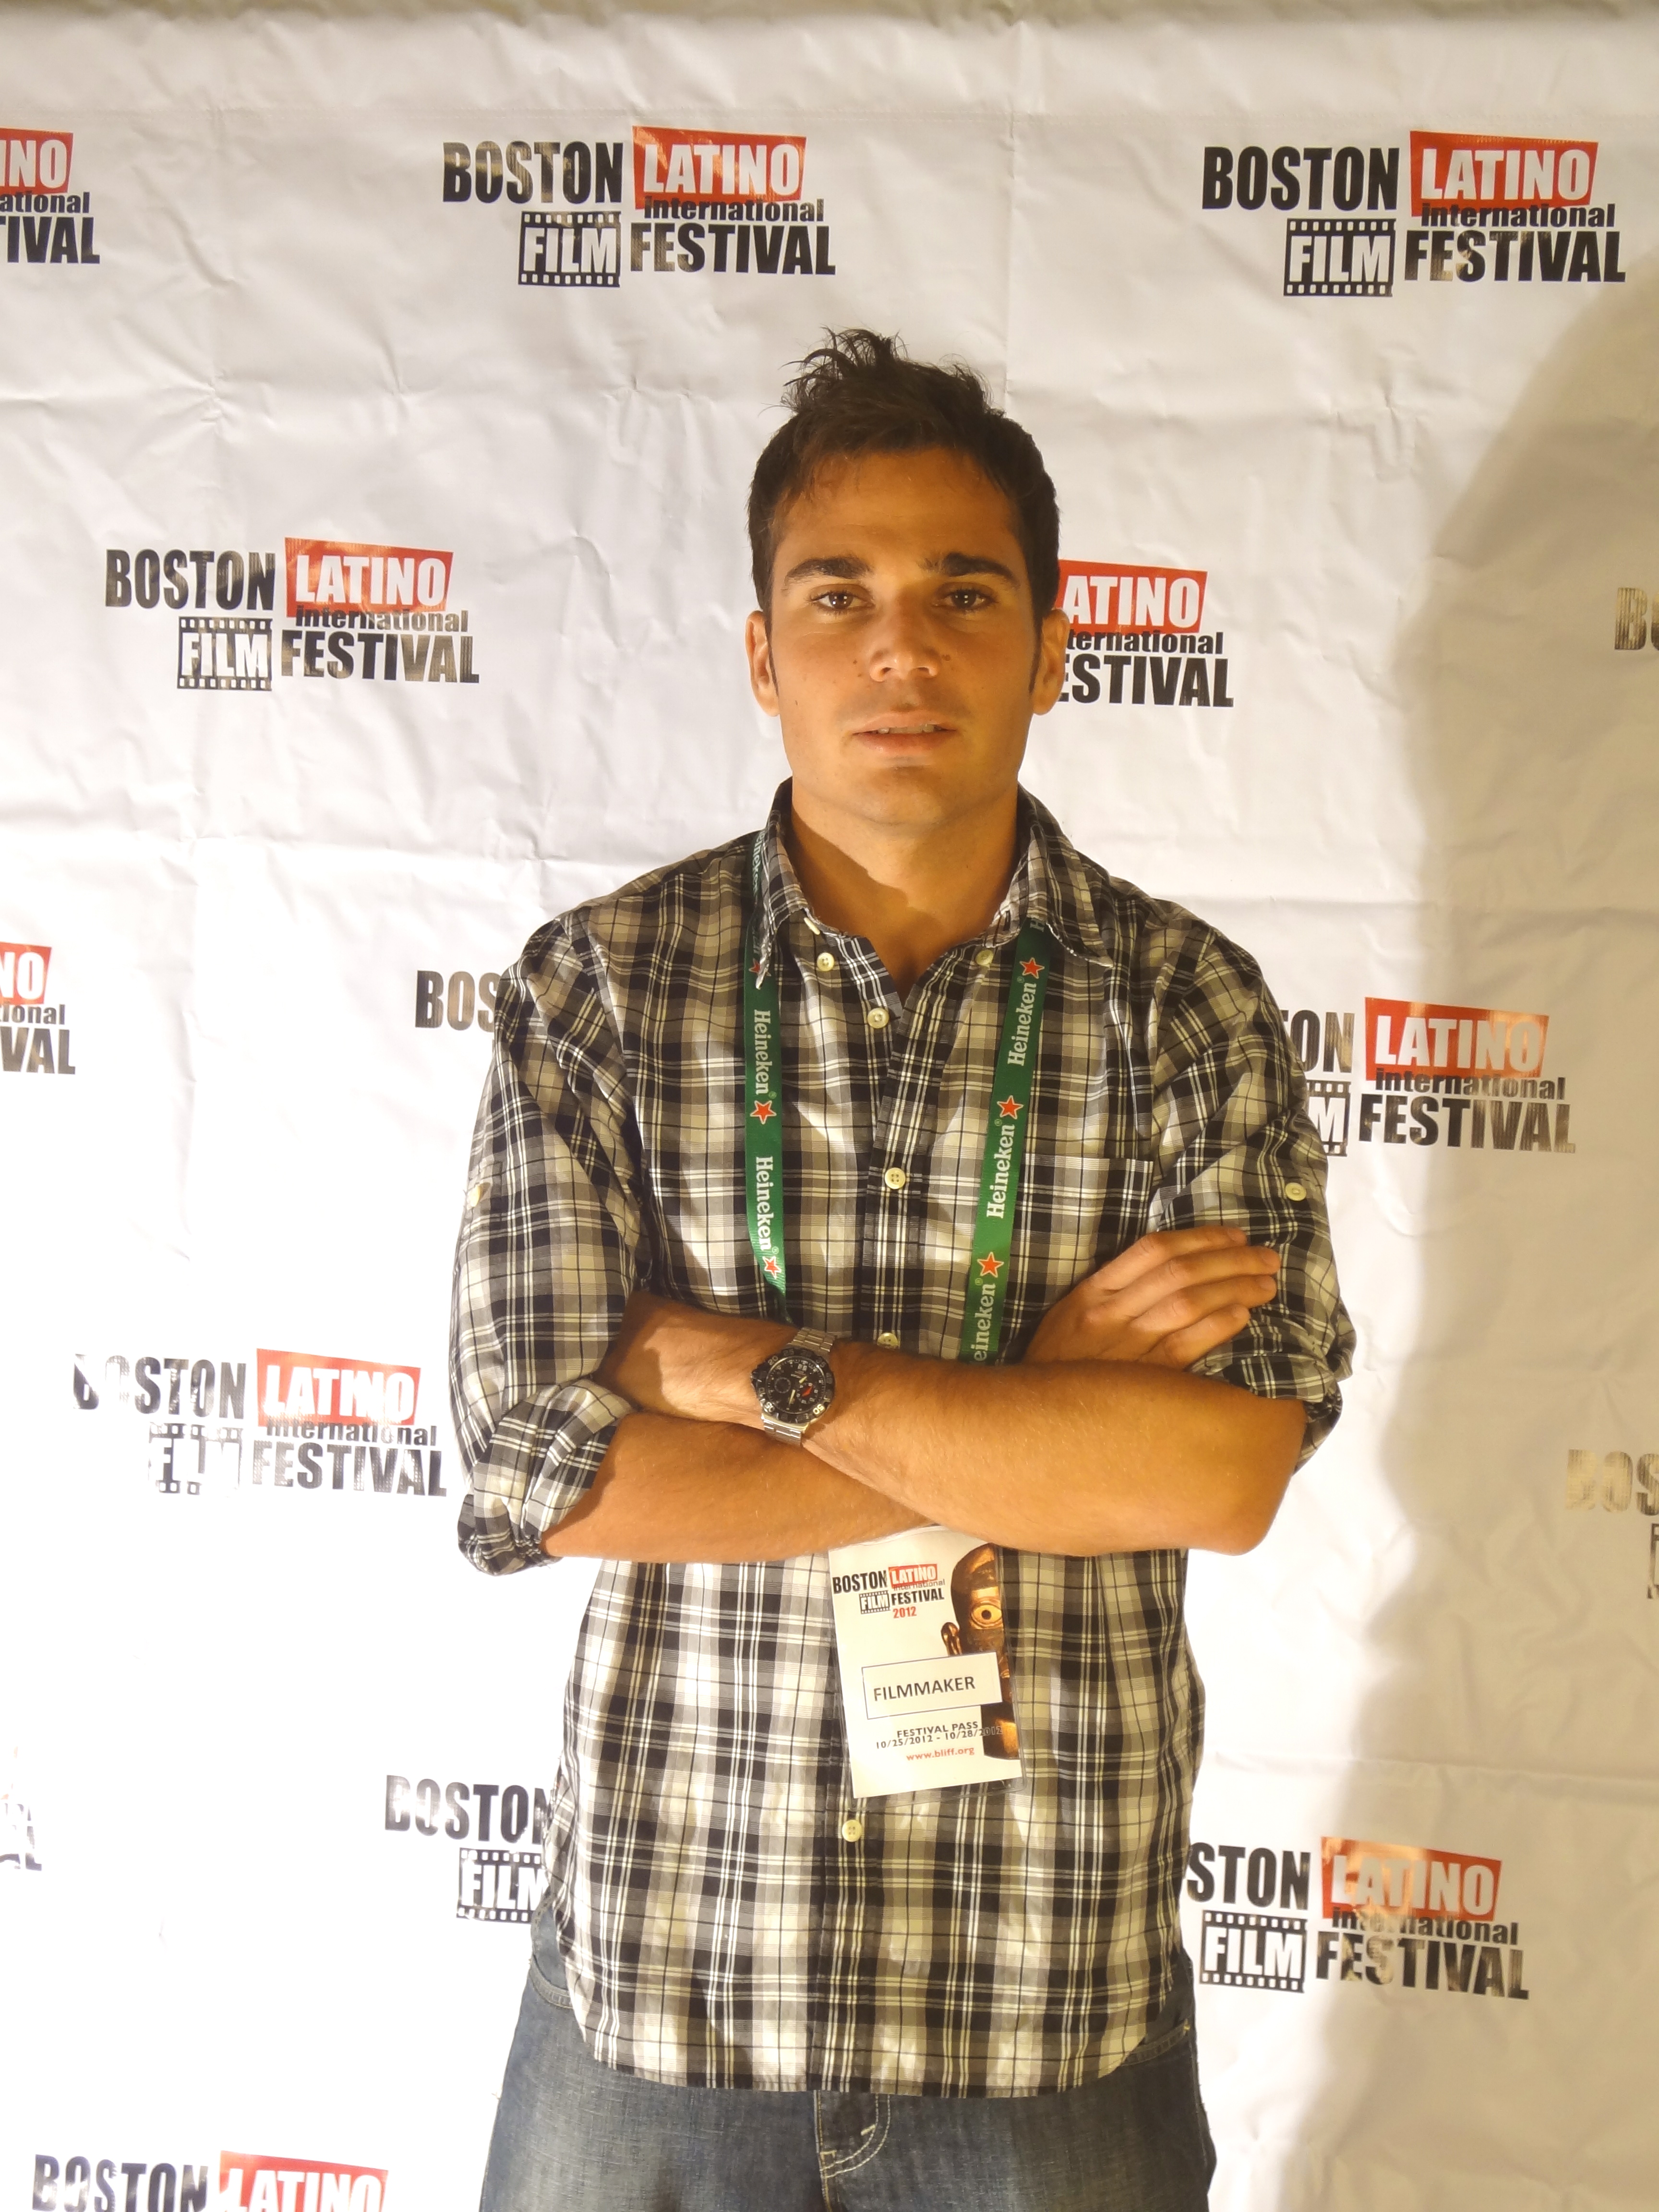 Boston Latino Film Festival 2012 in Harvard University.